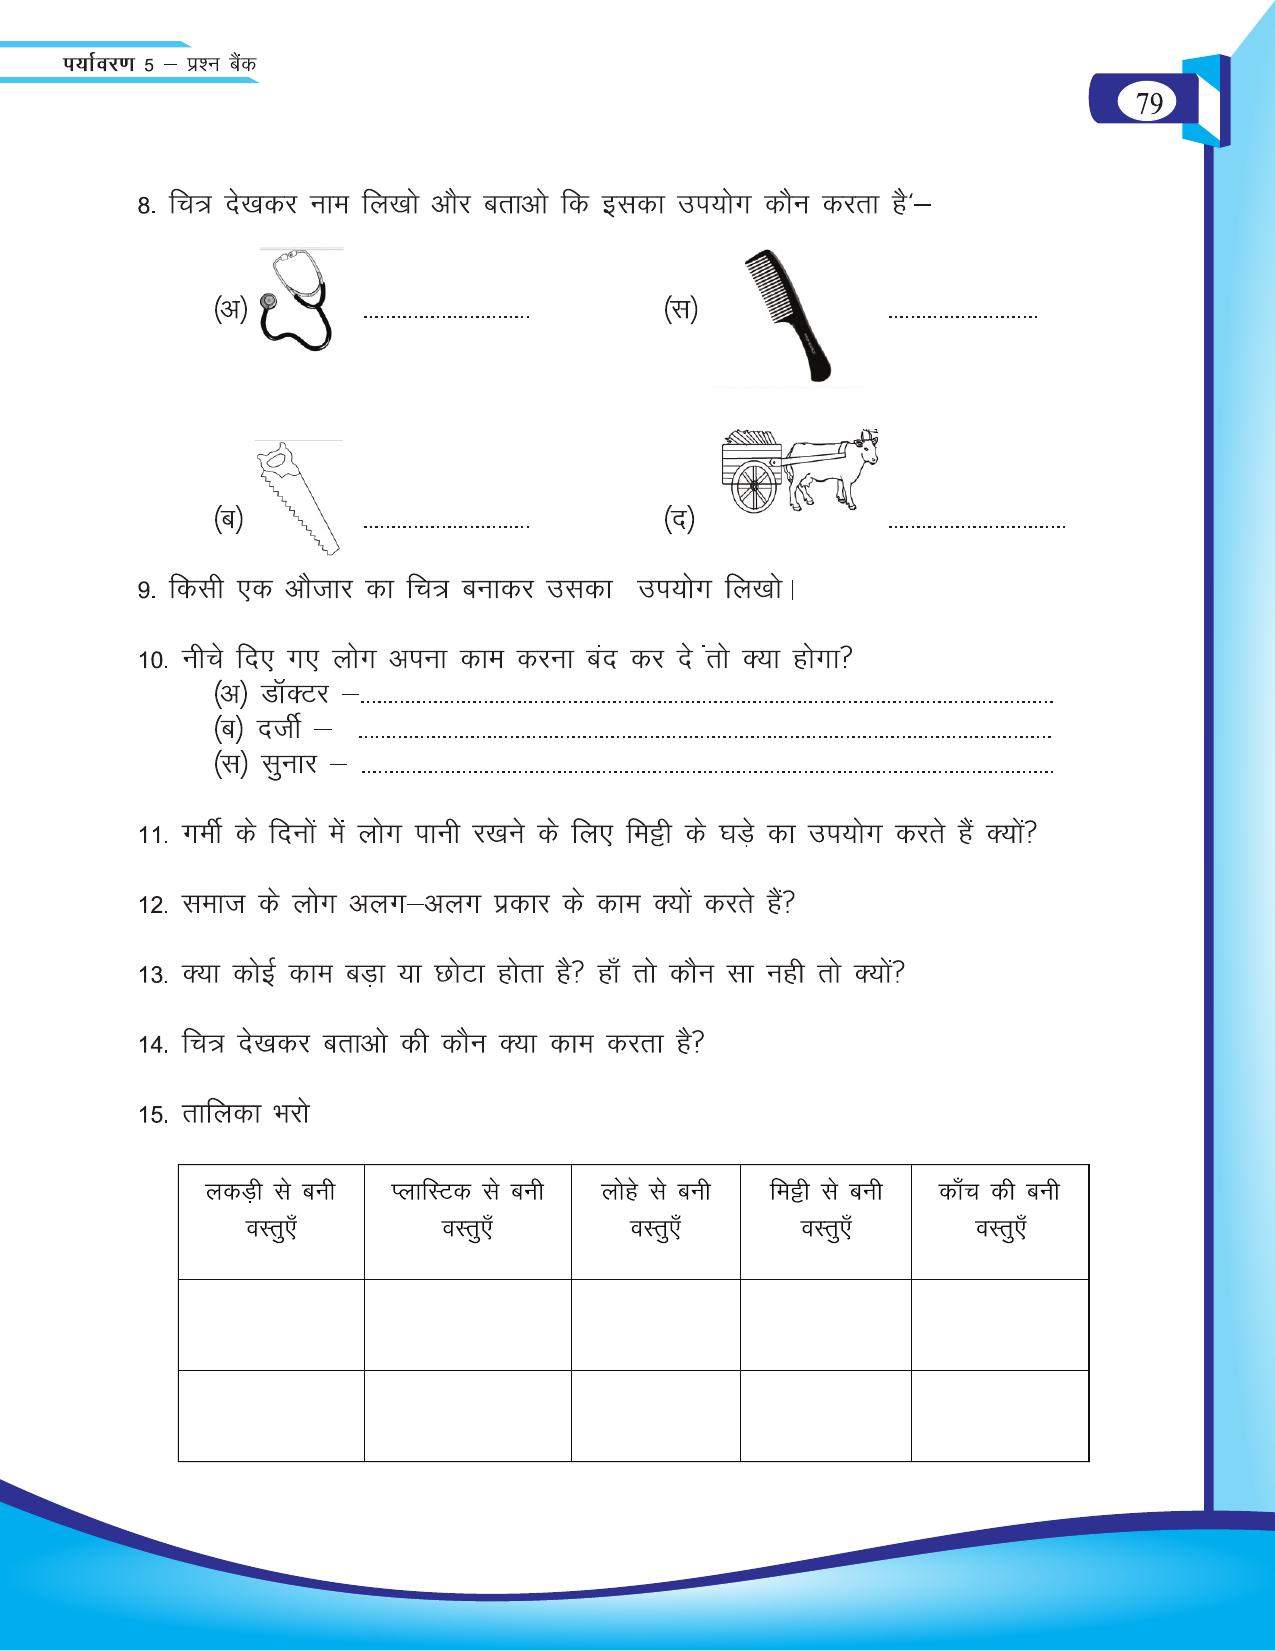 Chhattisgarh Board Class 5 EVS Question Bank 2015-16 - Page 5